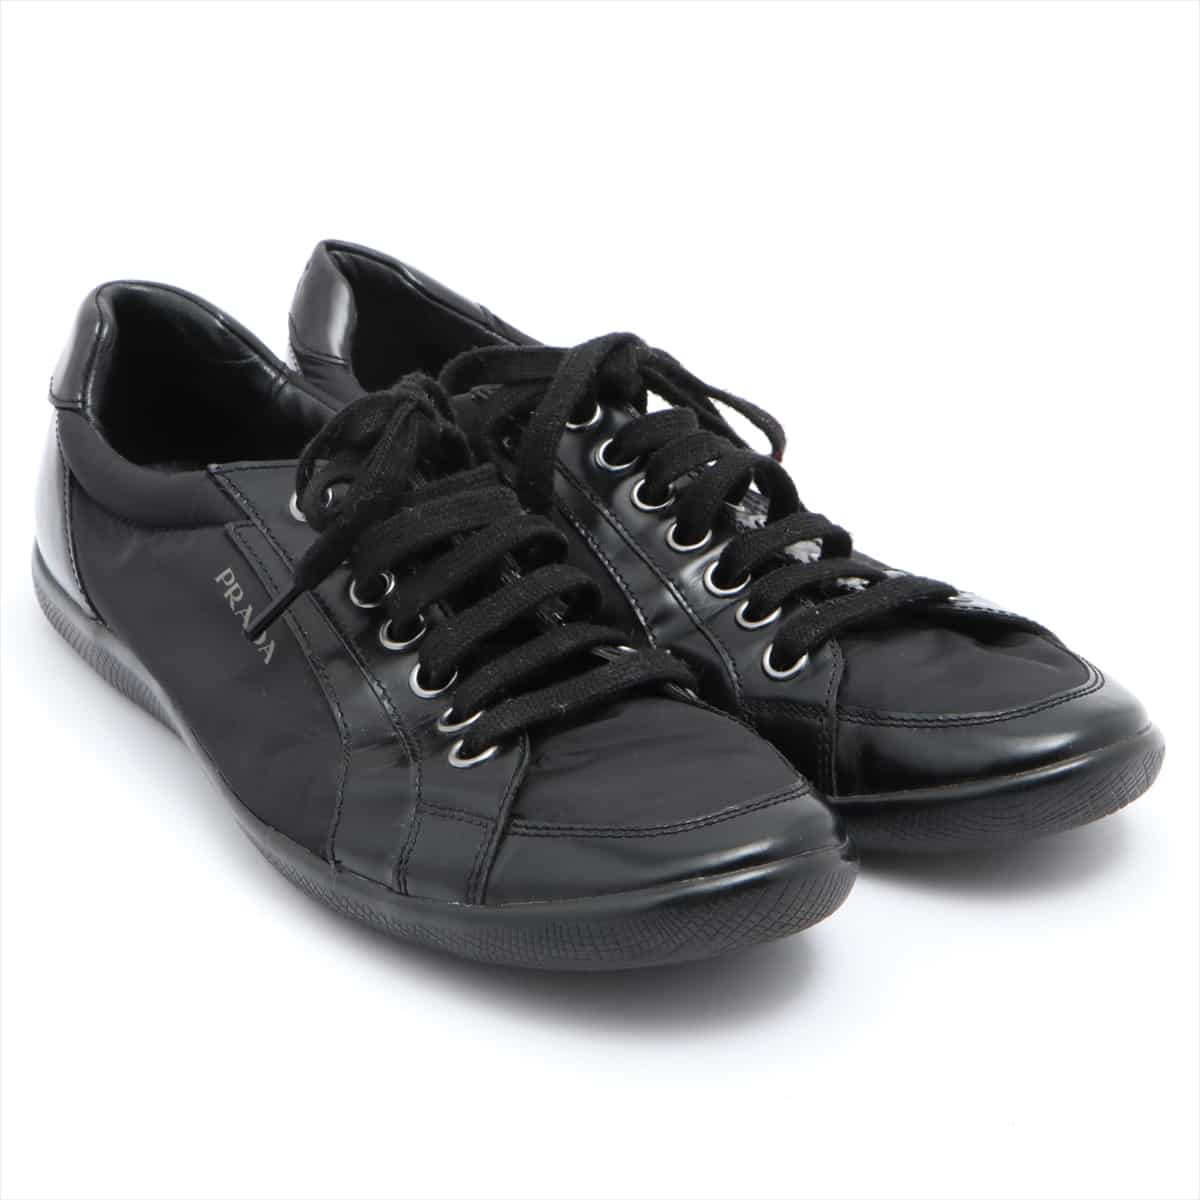 Prada Sport Nylon & leather Sneakers 8 Men's Black